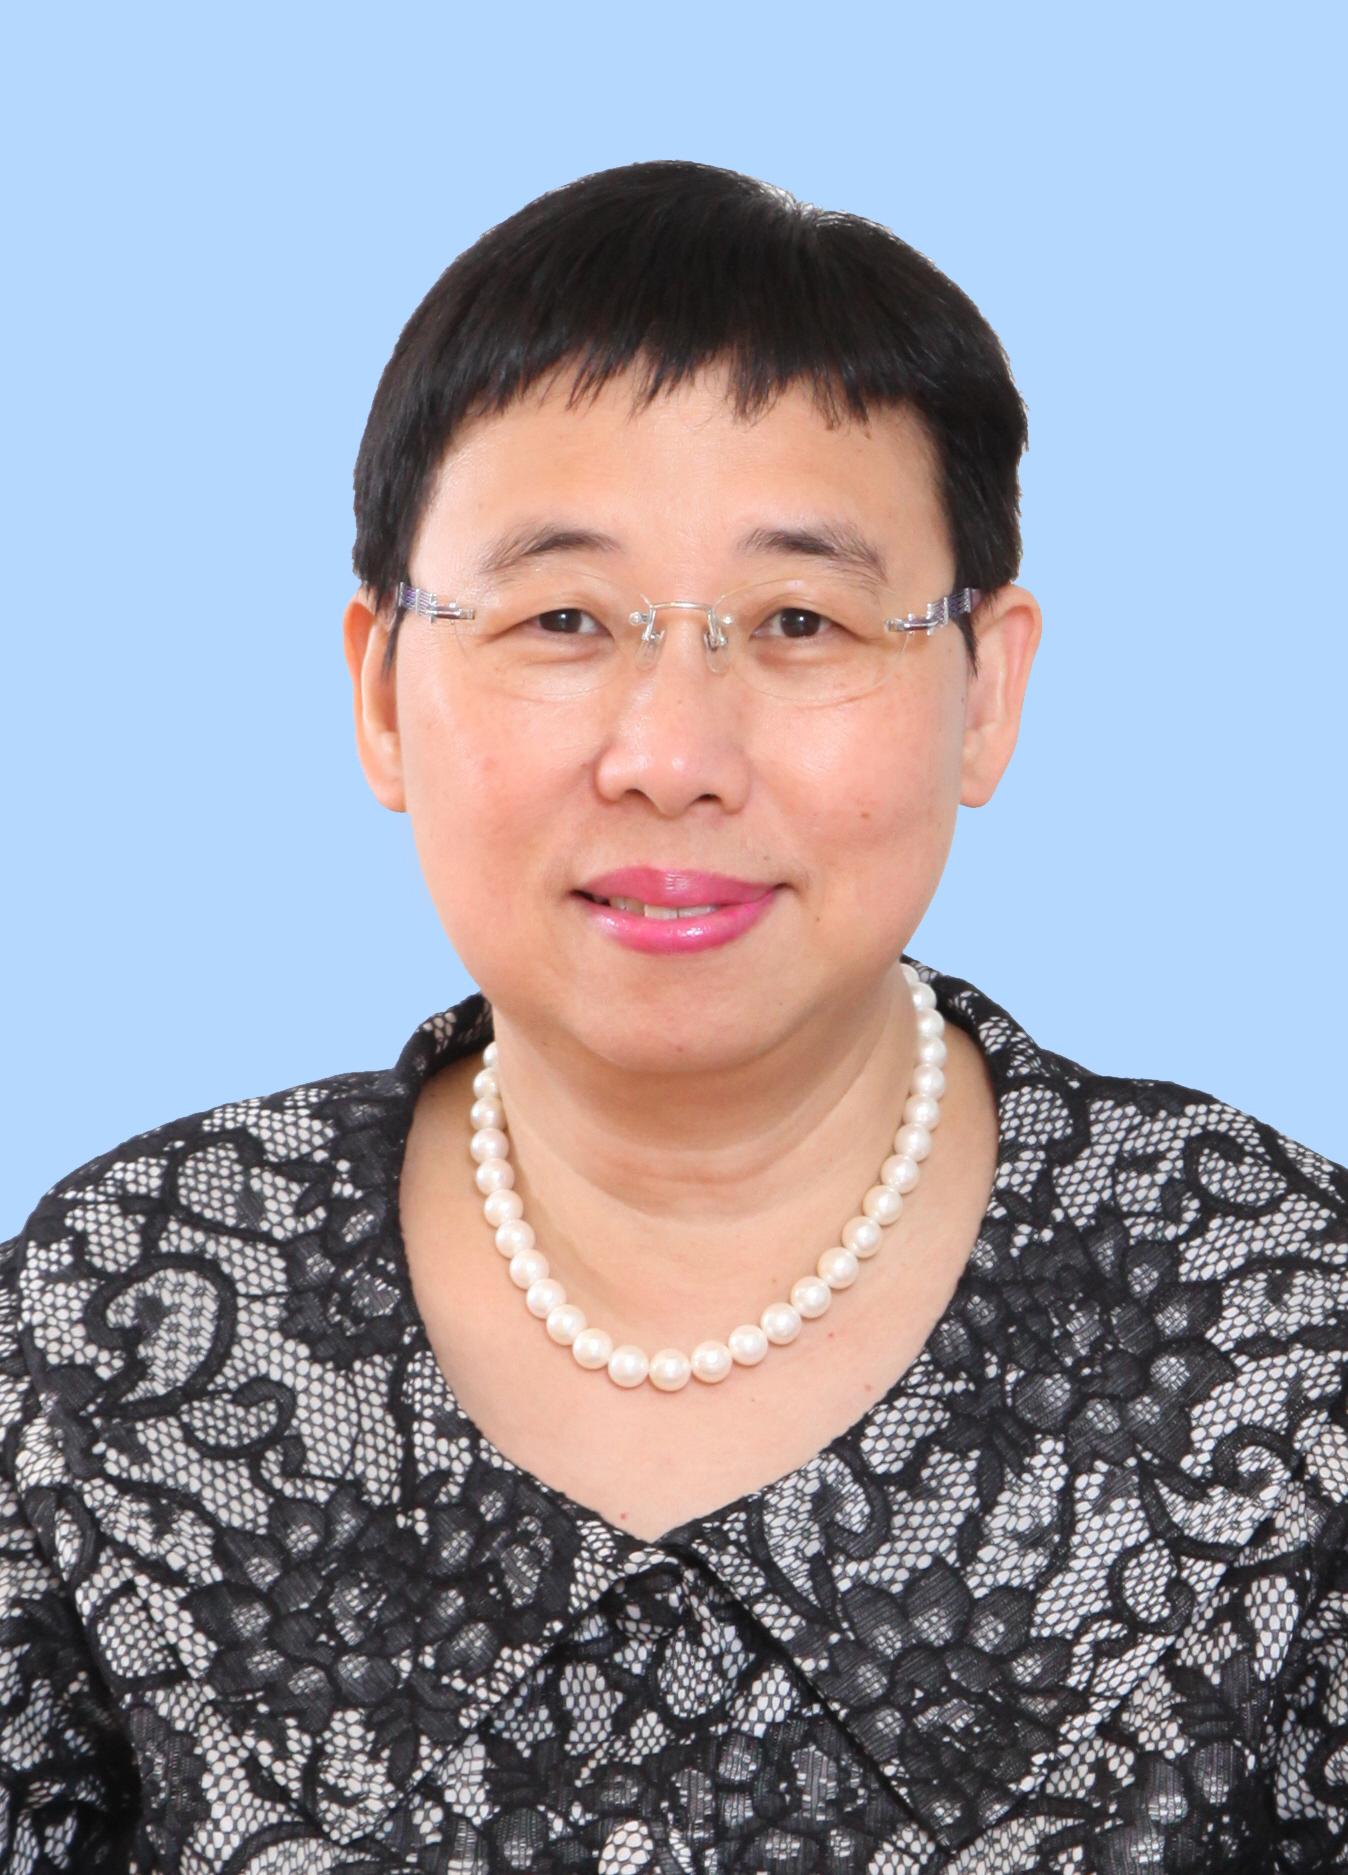 商務及經濟發展局常任秘書長利敏貞將於七月開始退休前休假。